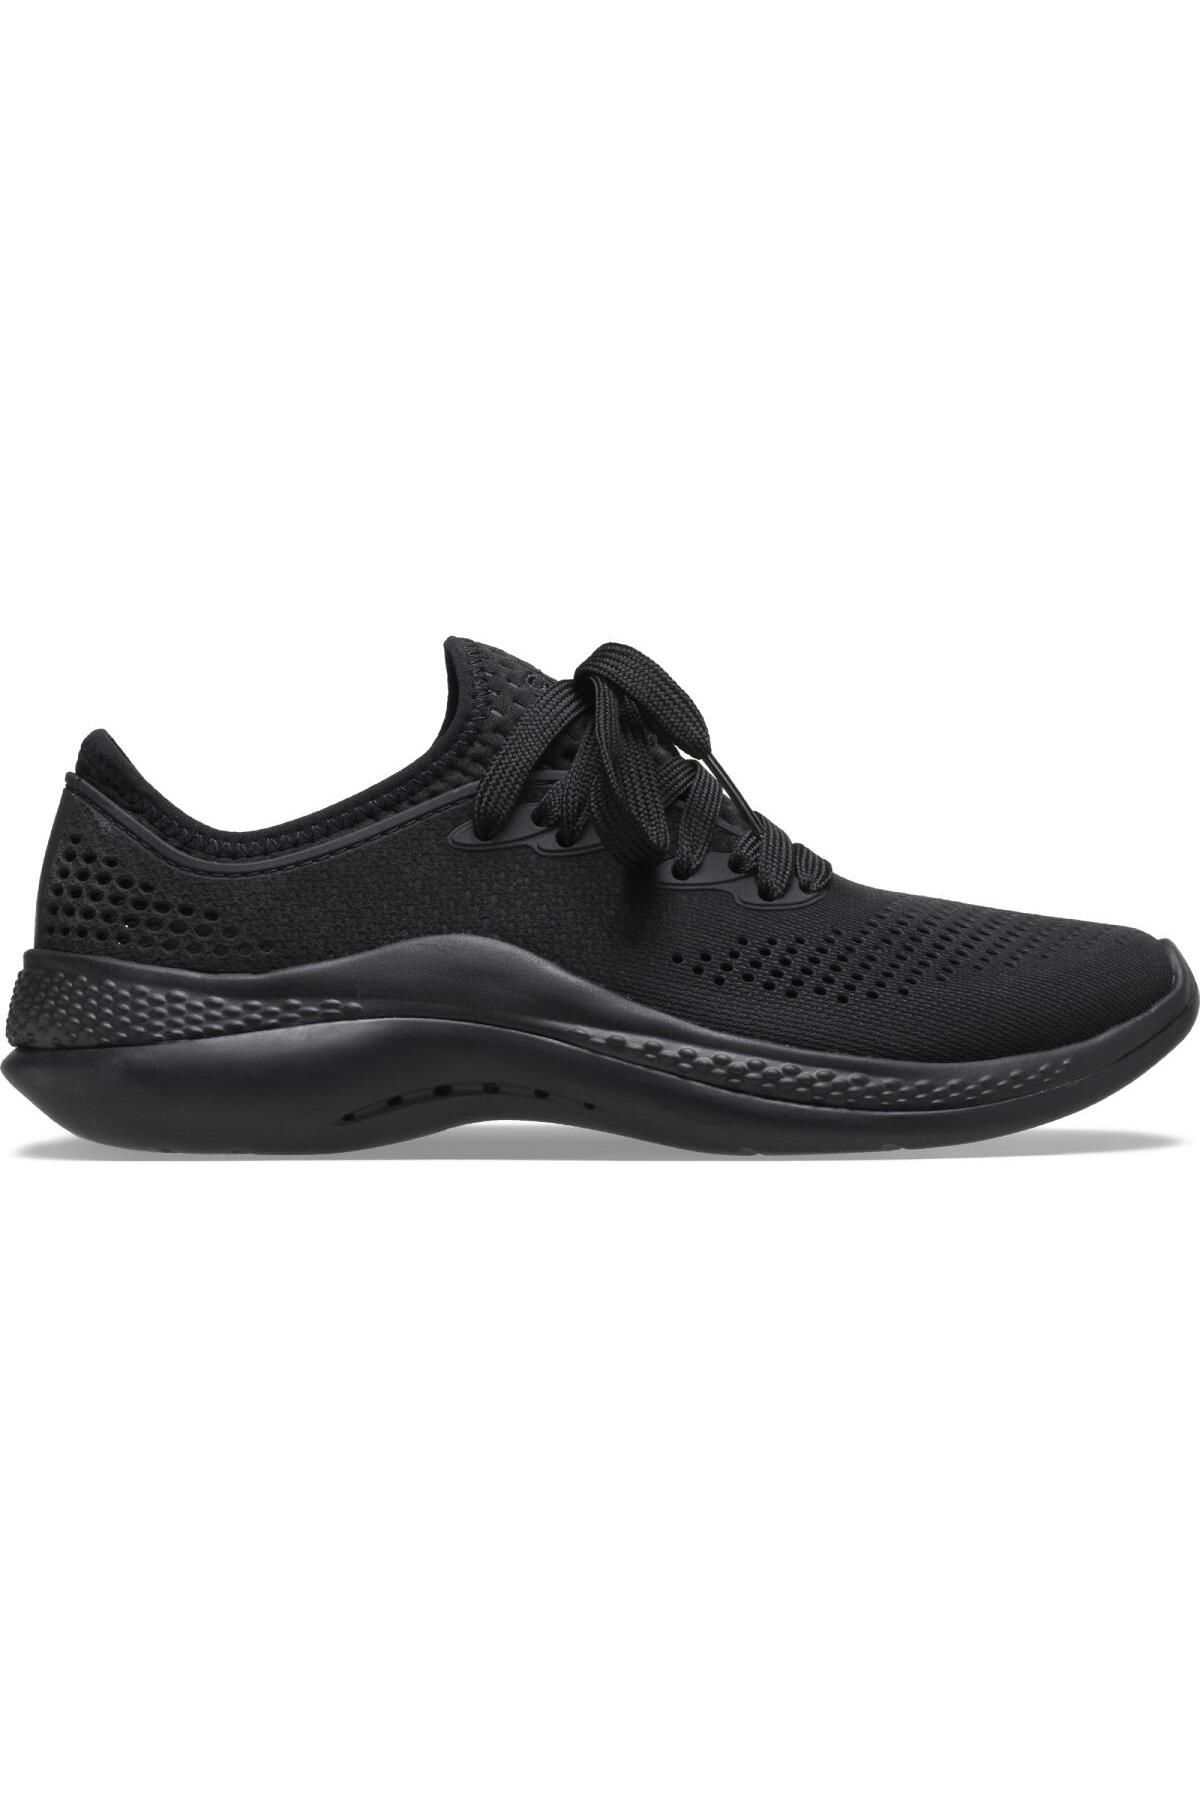 Crocs 360 Pacer Kadın Ayakkabı 206705-060 Black/black